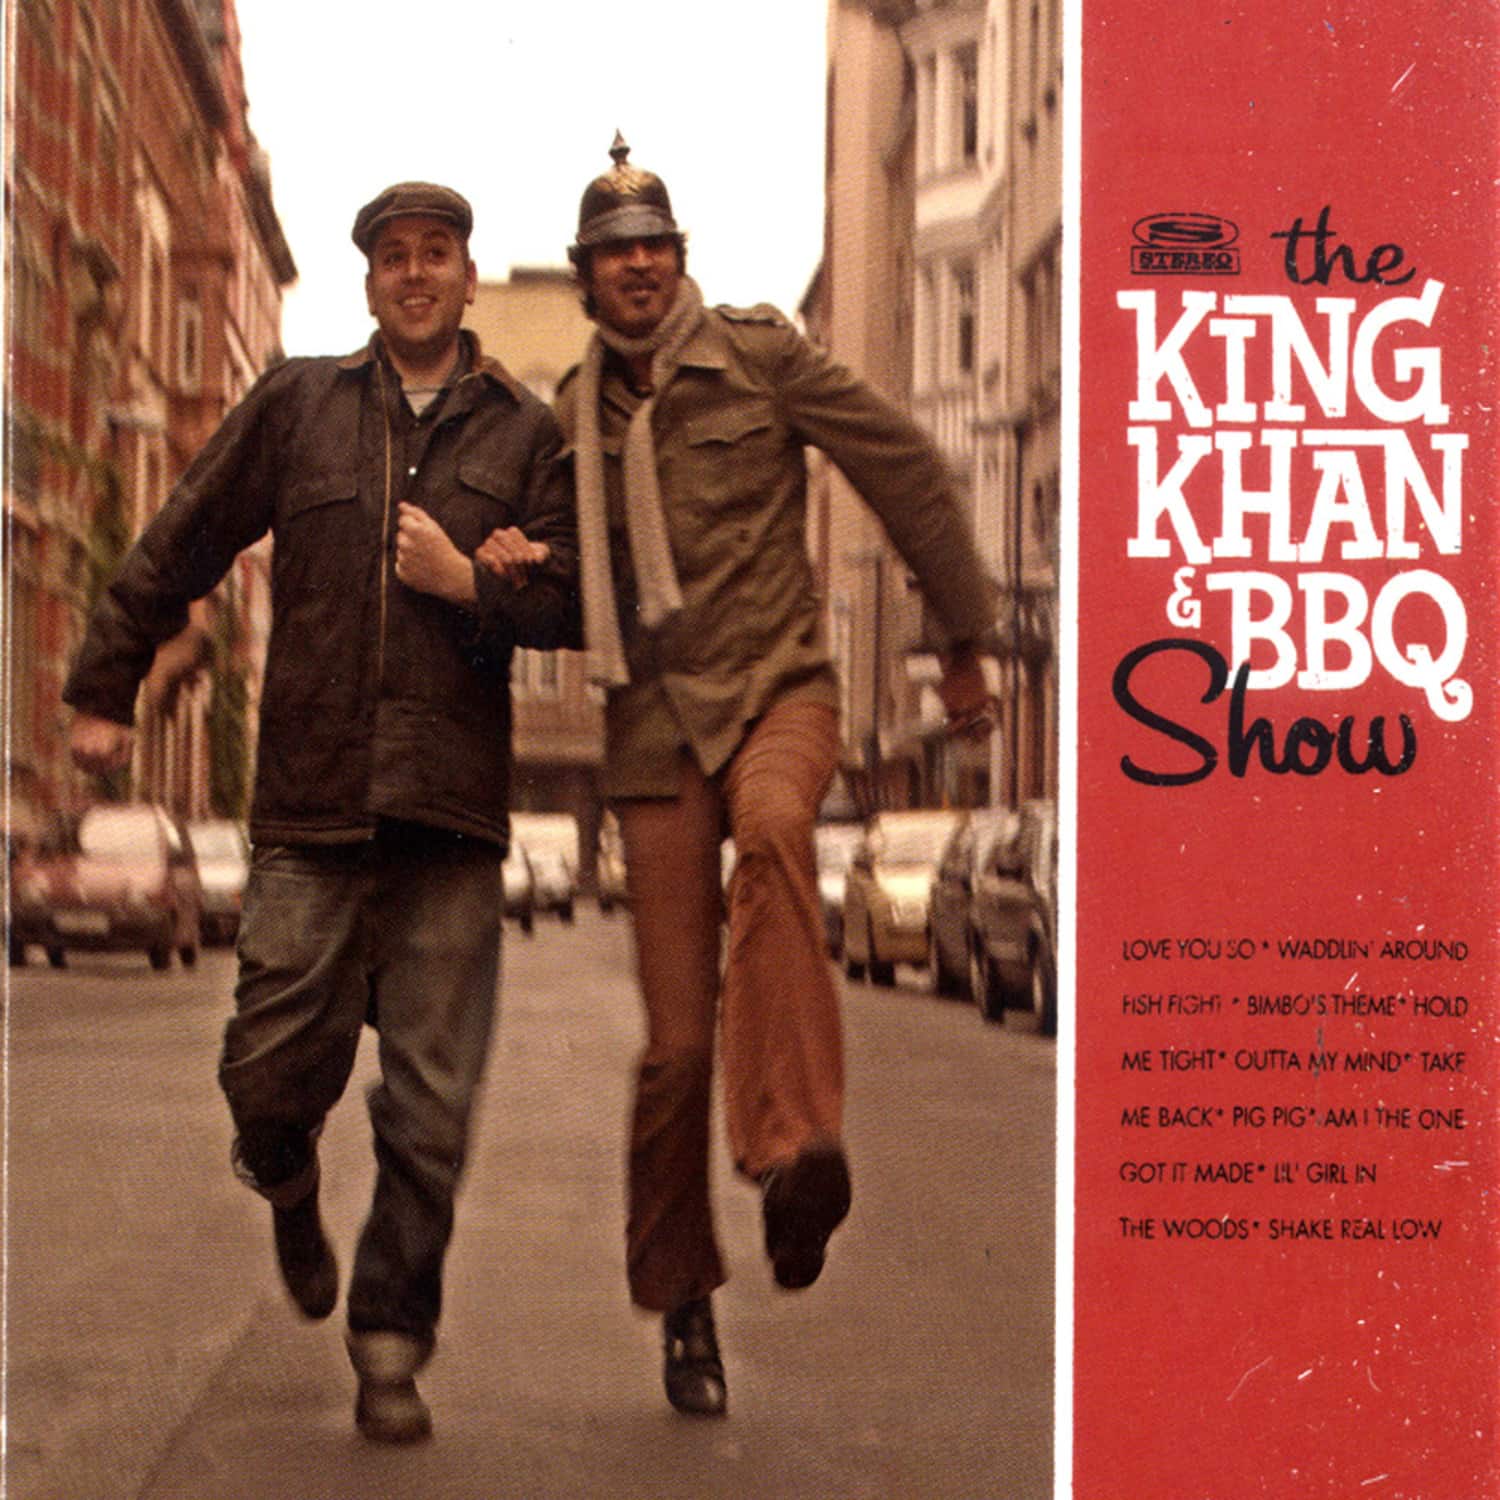 The King Khan & BBQ Show - THE KING KHAN & BBQ SHOW 